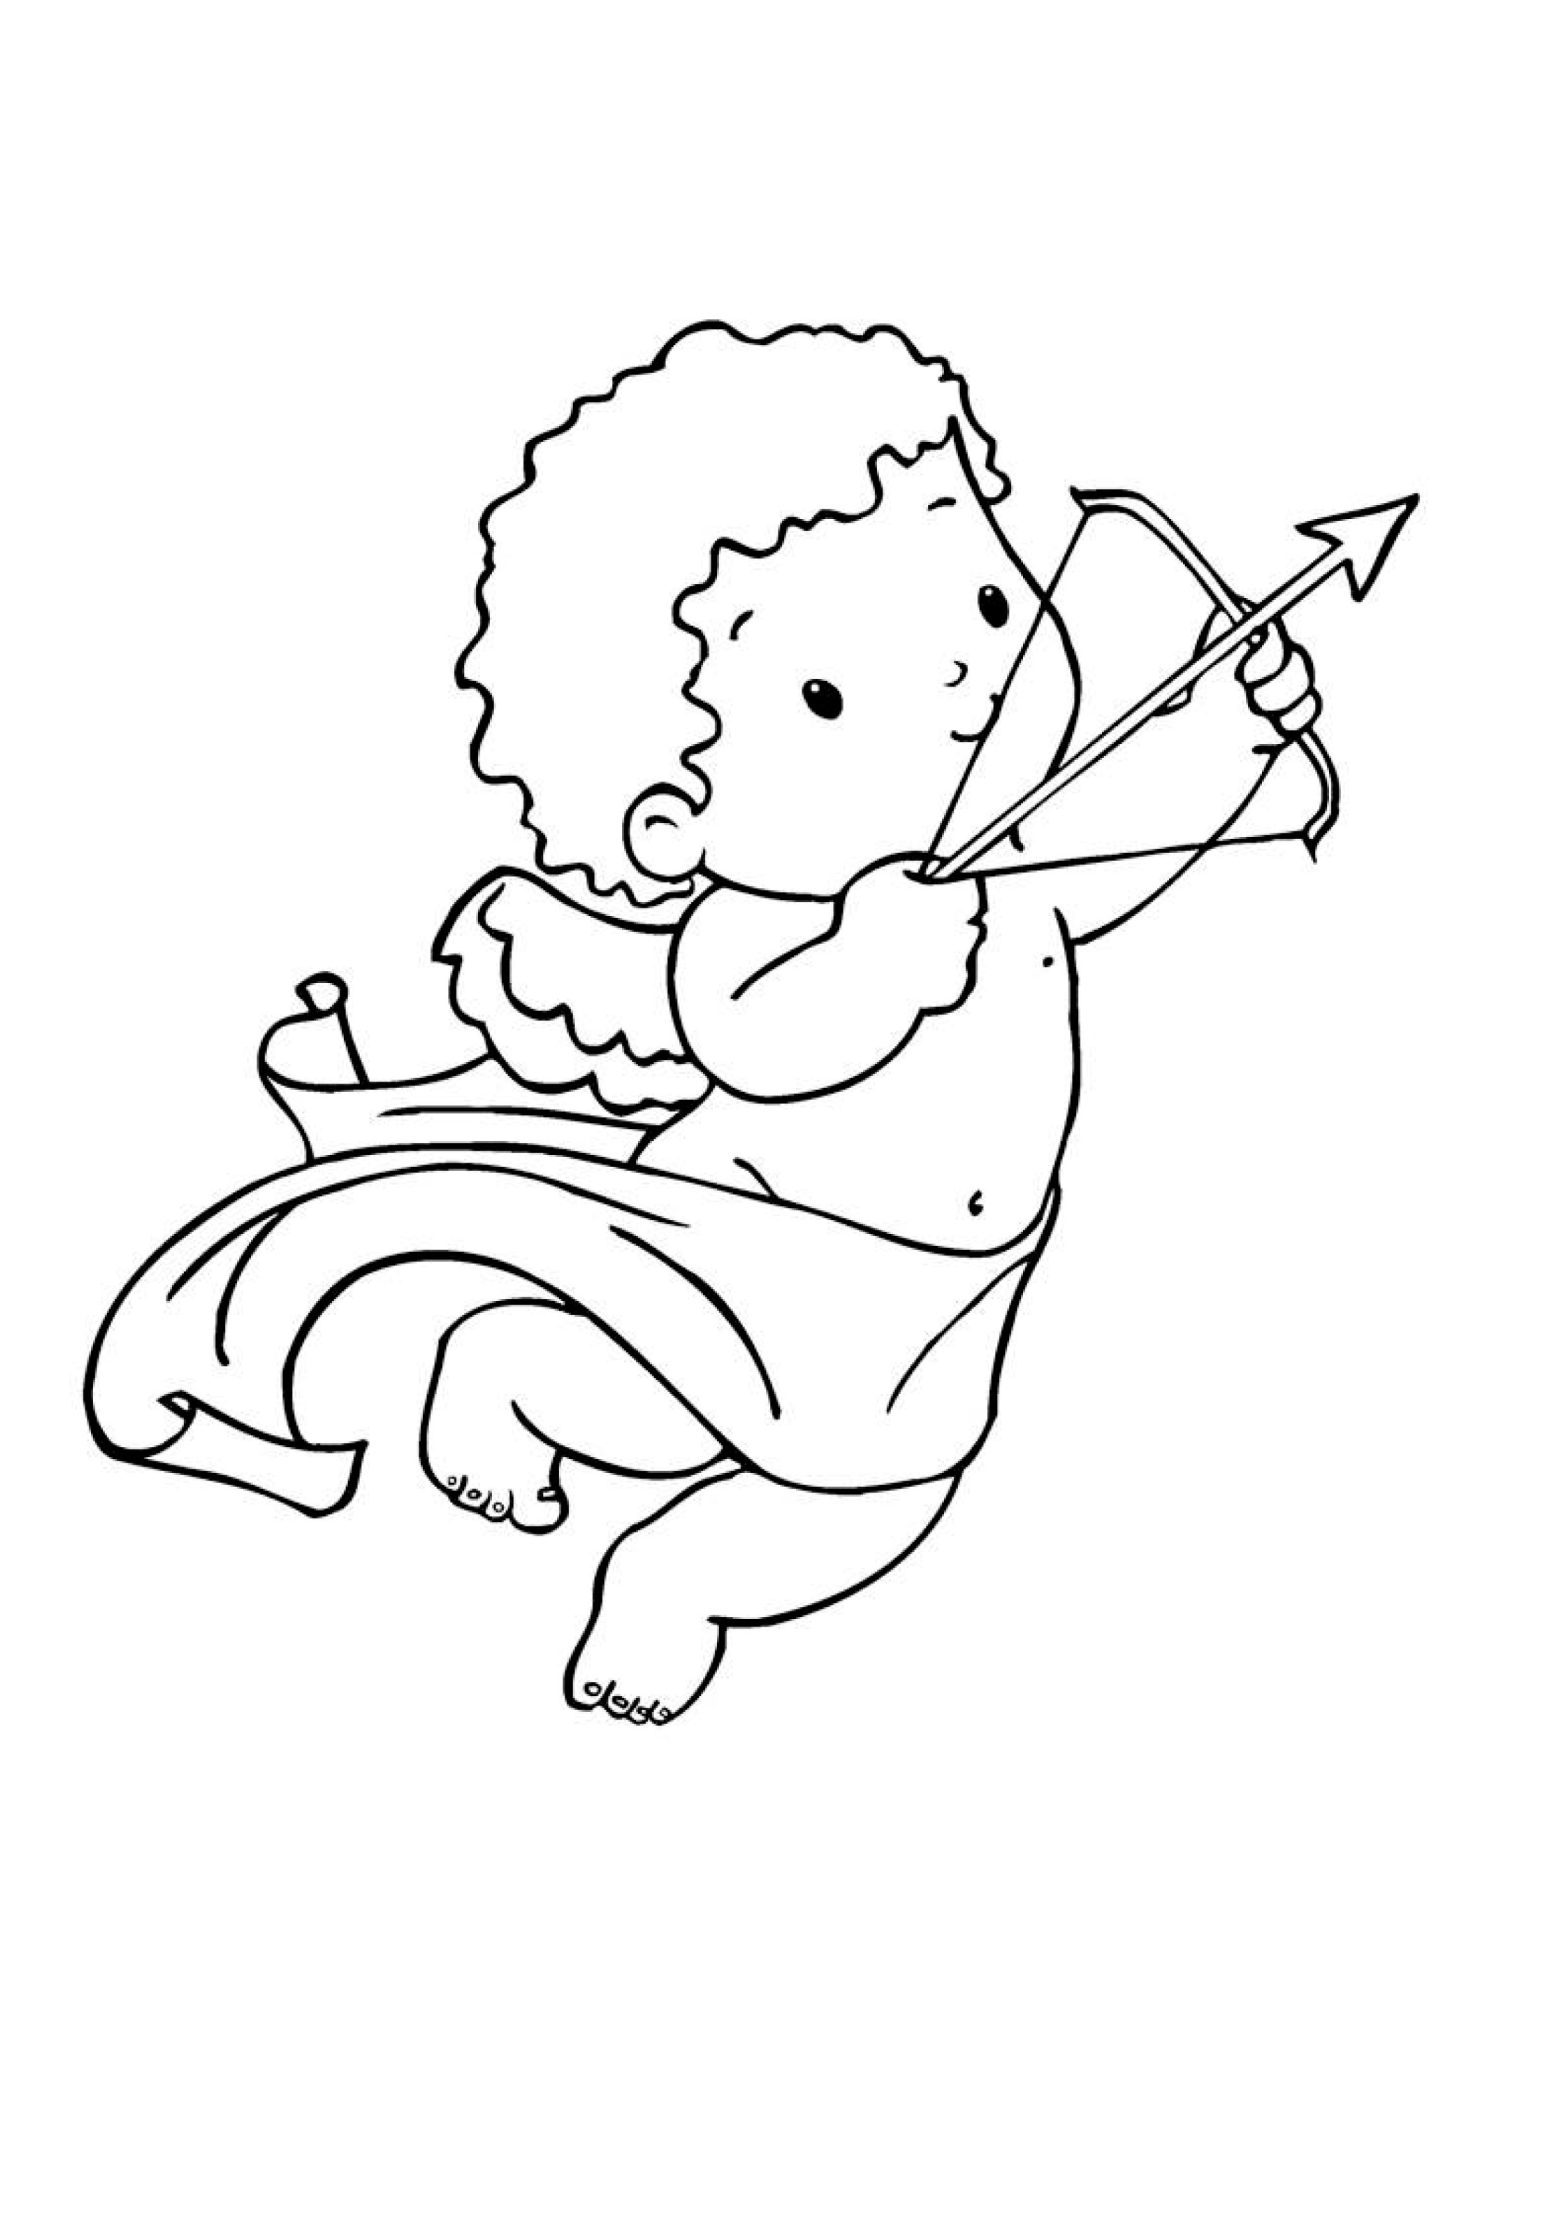 Раскраска с изображением Амура и его стрел